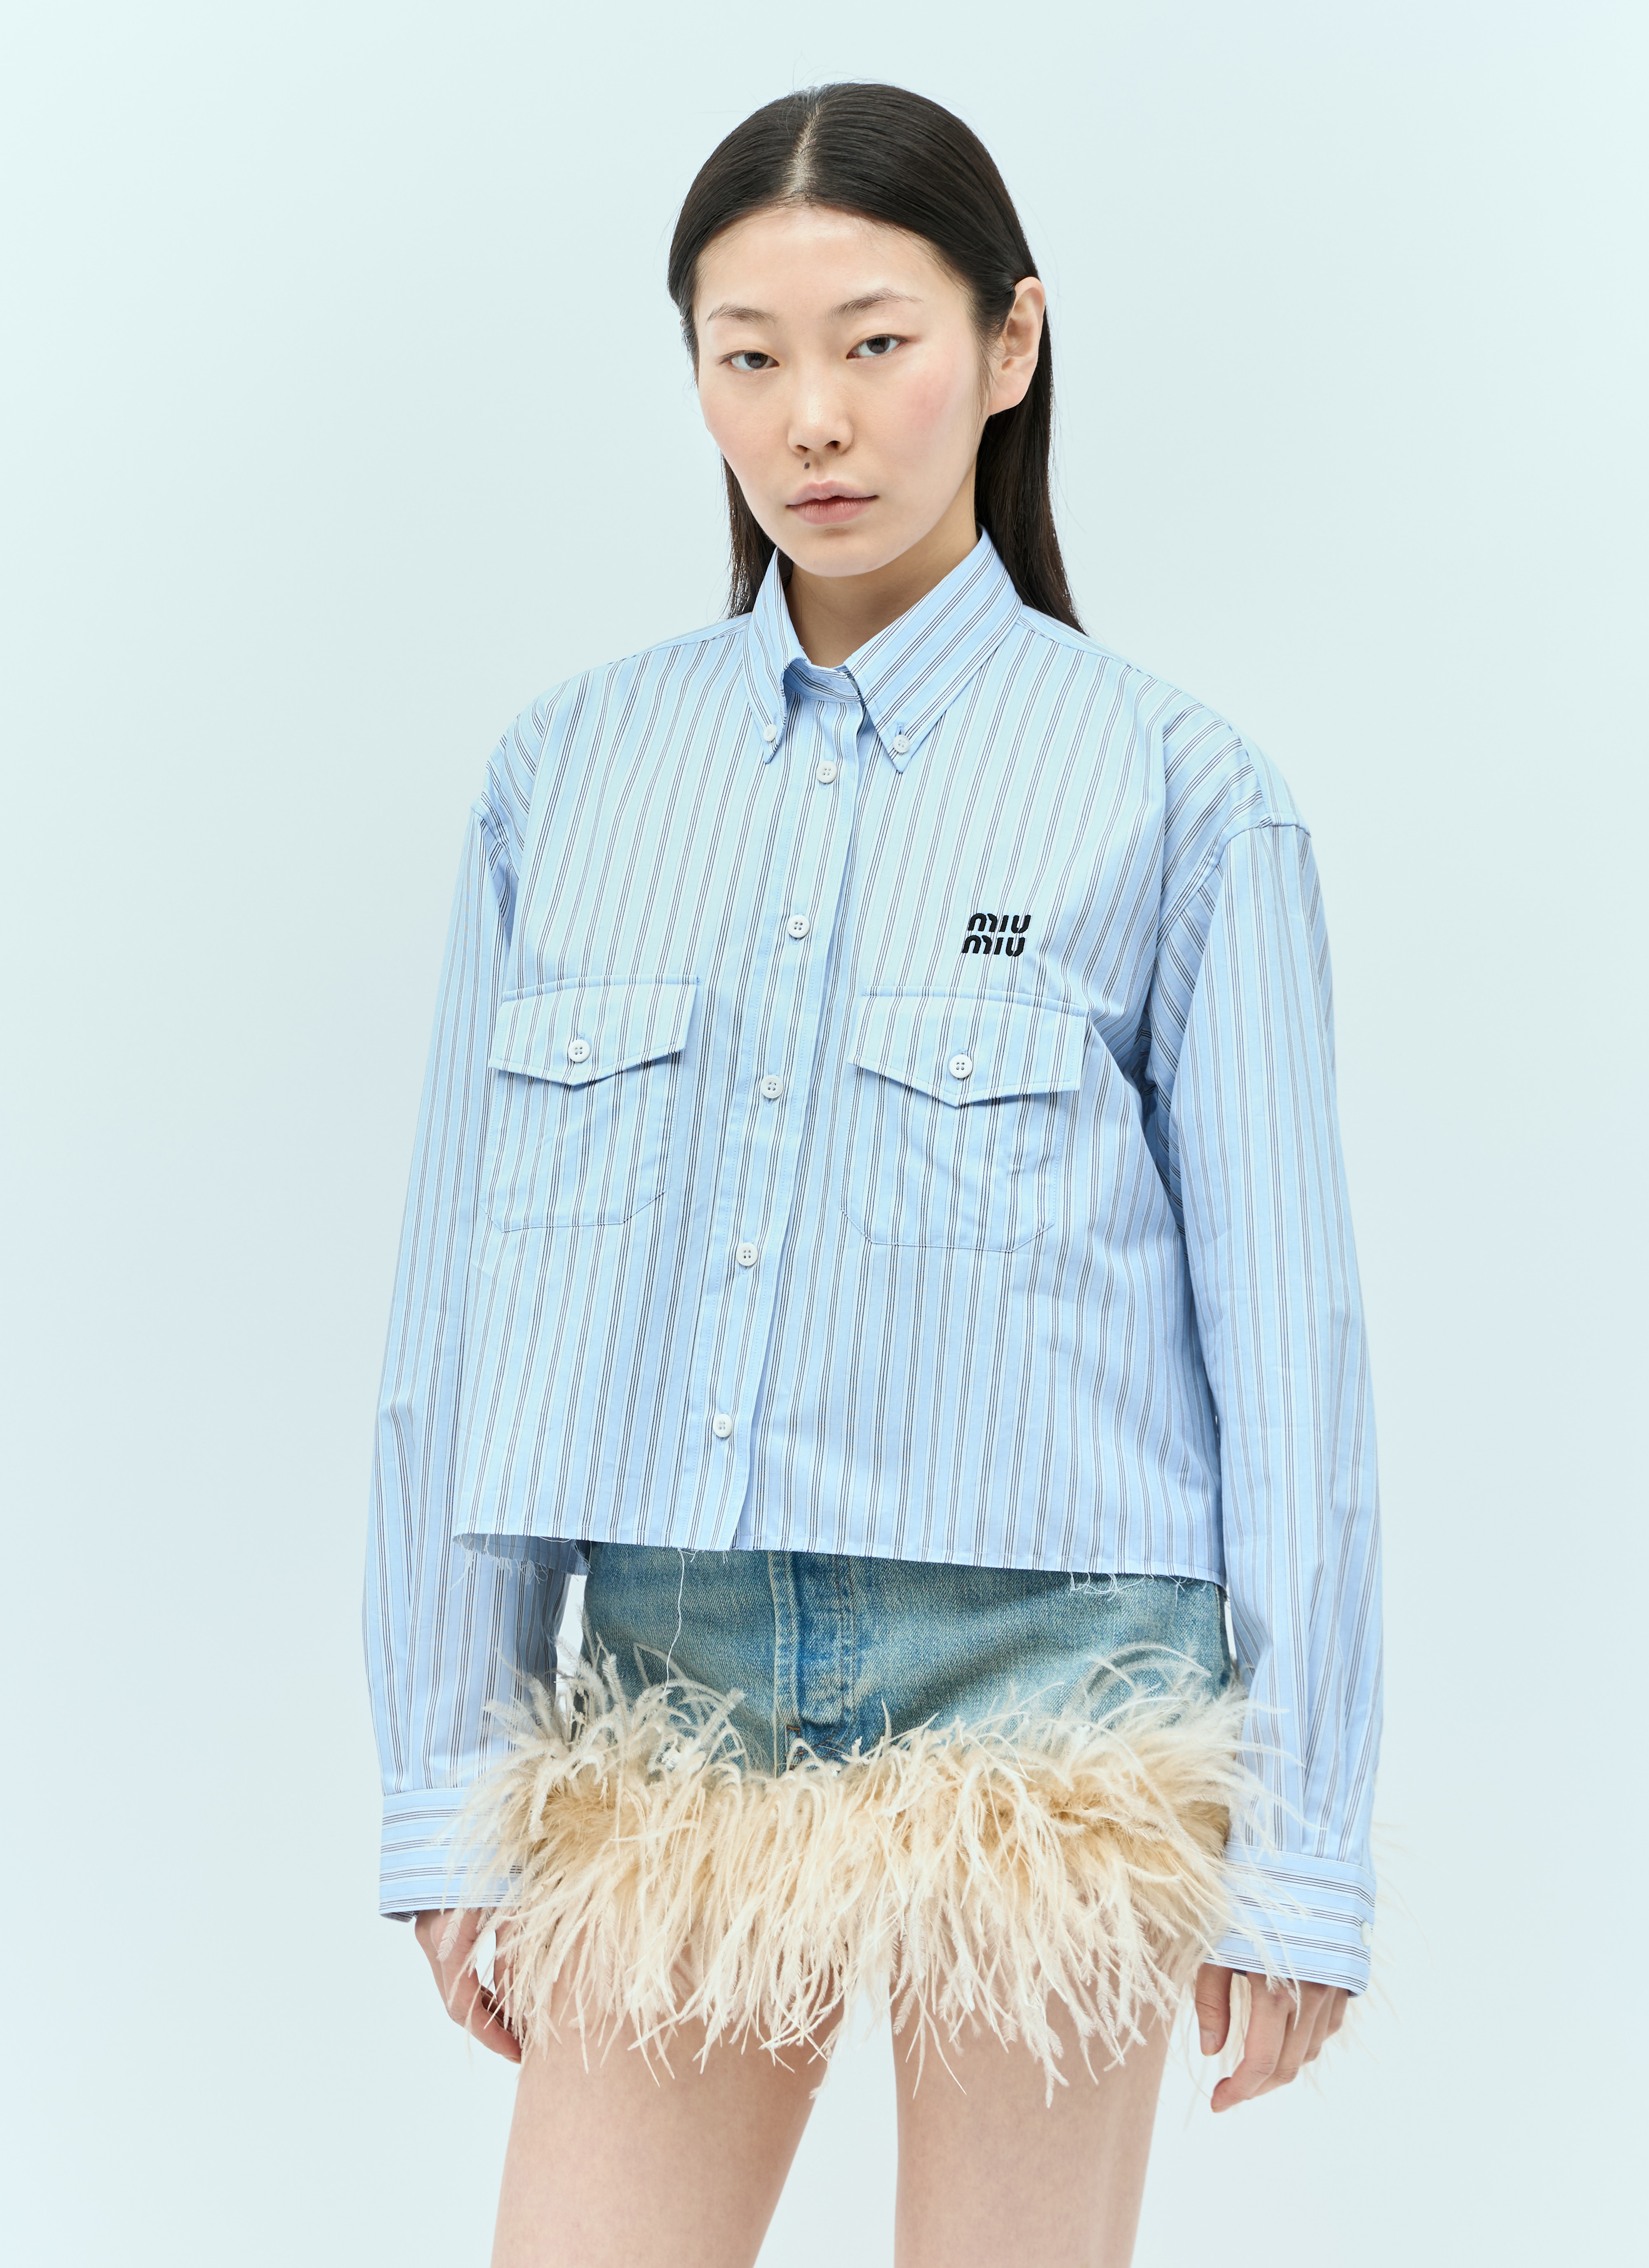 Miu Miu Women's Cropped Striped Shirt in Blue | LN-CC®